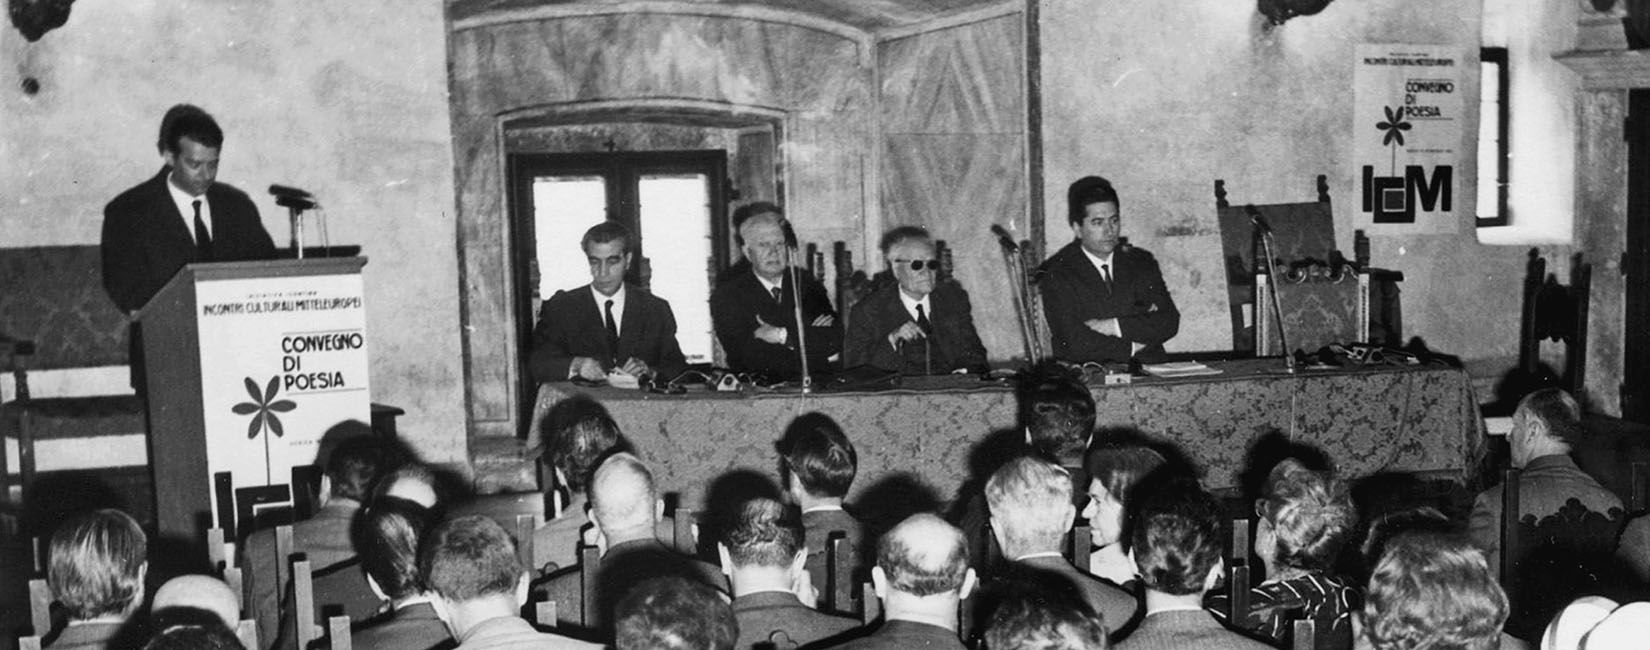 Gorizia, 1966. Il primo Incontro Culturale Mitteleuropeo è presieduto da Biagio Marin, affiancato da Giuseppe Ungaretti in qualità di Presidente onorario.